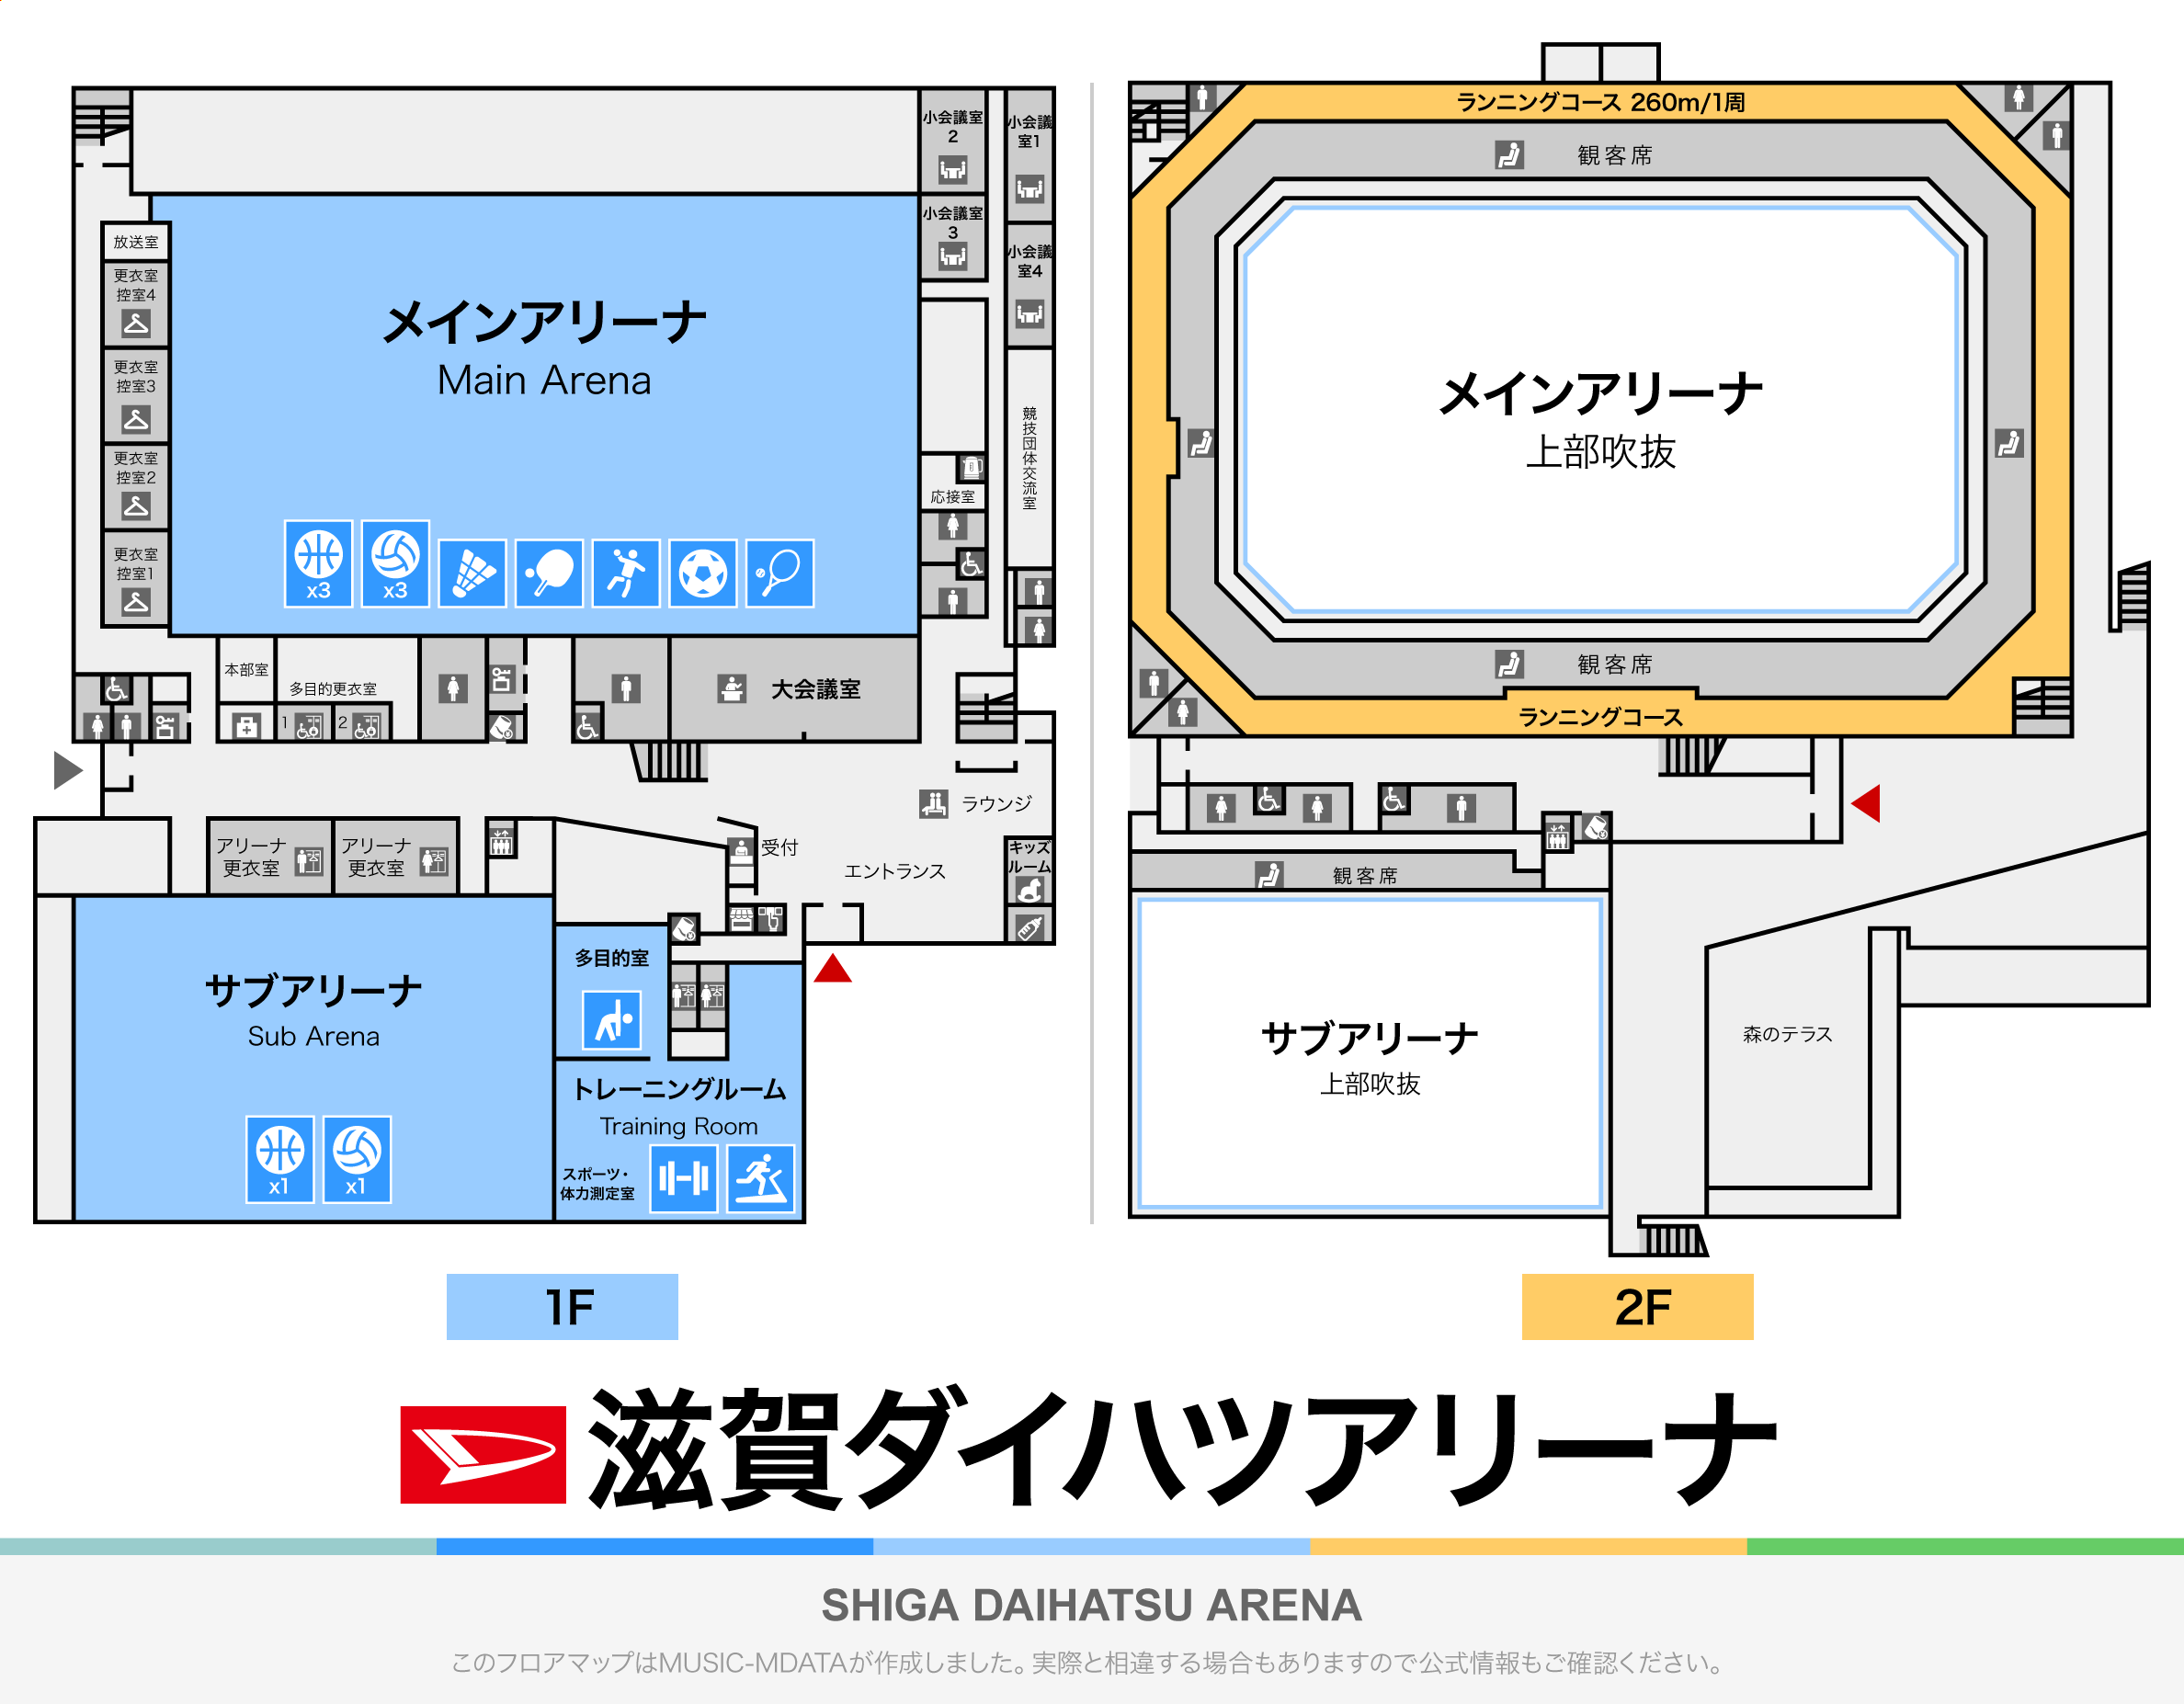 滋賀ダイハツアリーナのフロアマップ・体育館